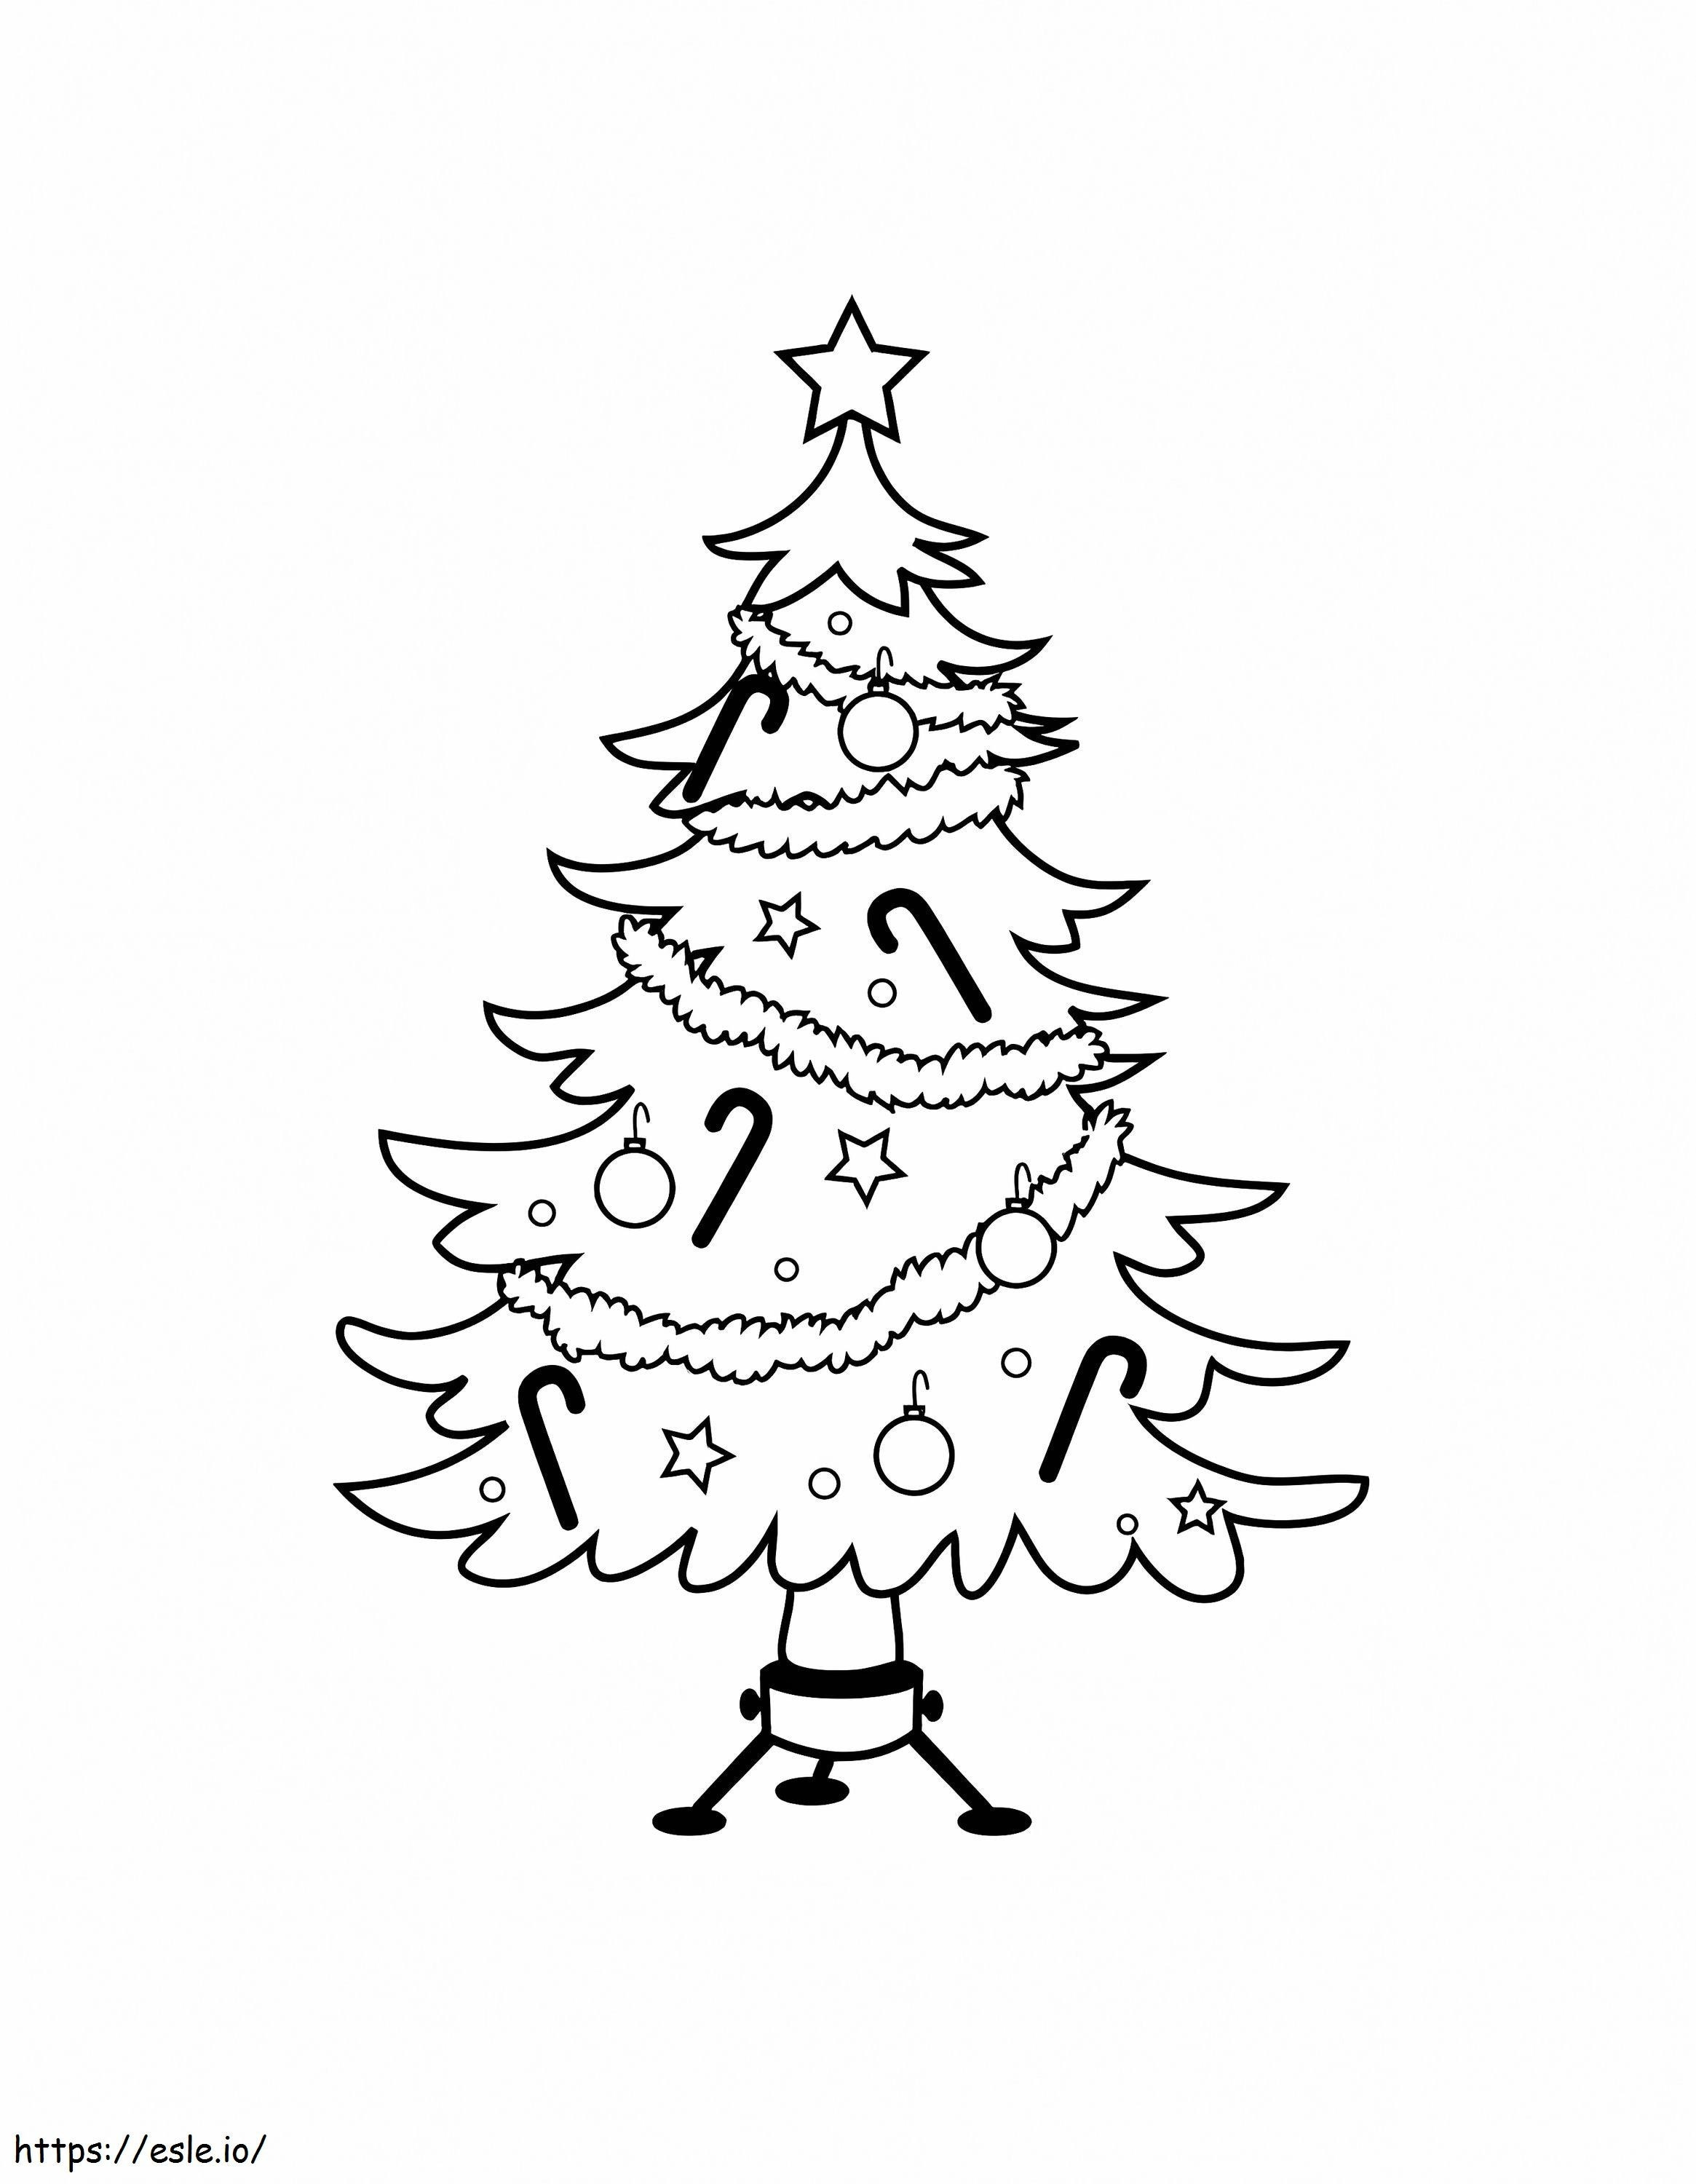 Beeindruckender Weihnachtsbaum ausmalbilder